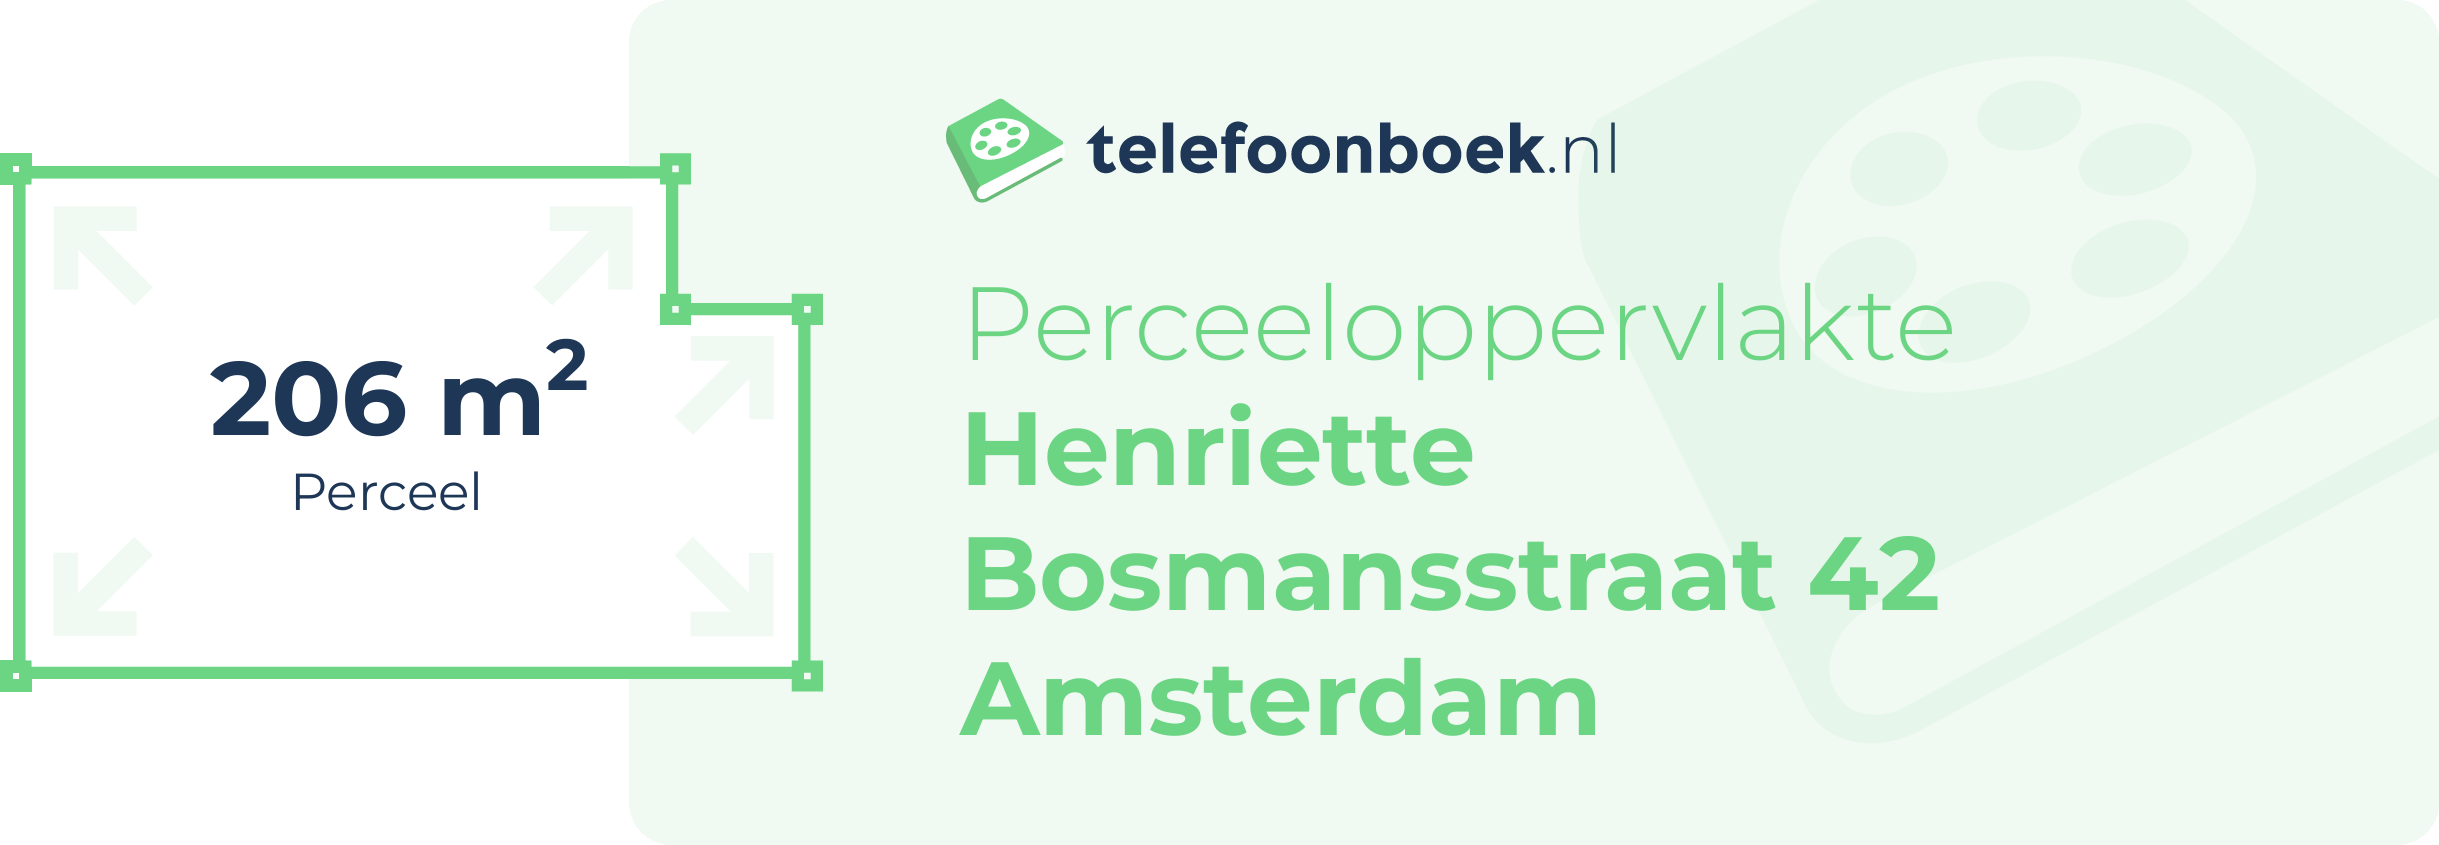 Perceeloppervlakte Henriette Bosmansstraat 42 Amsterdam